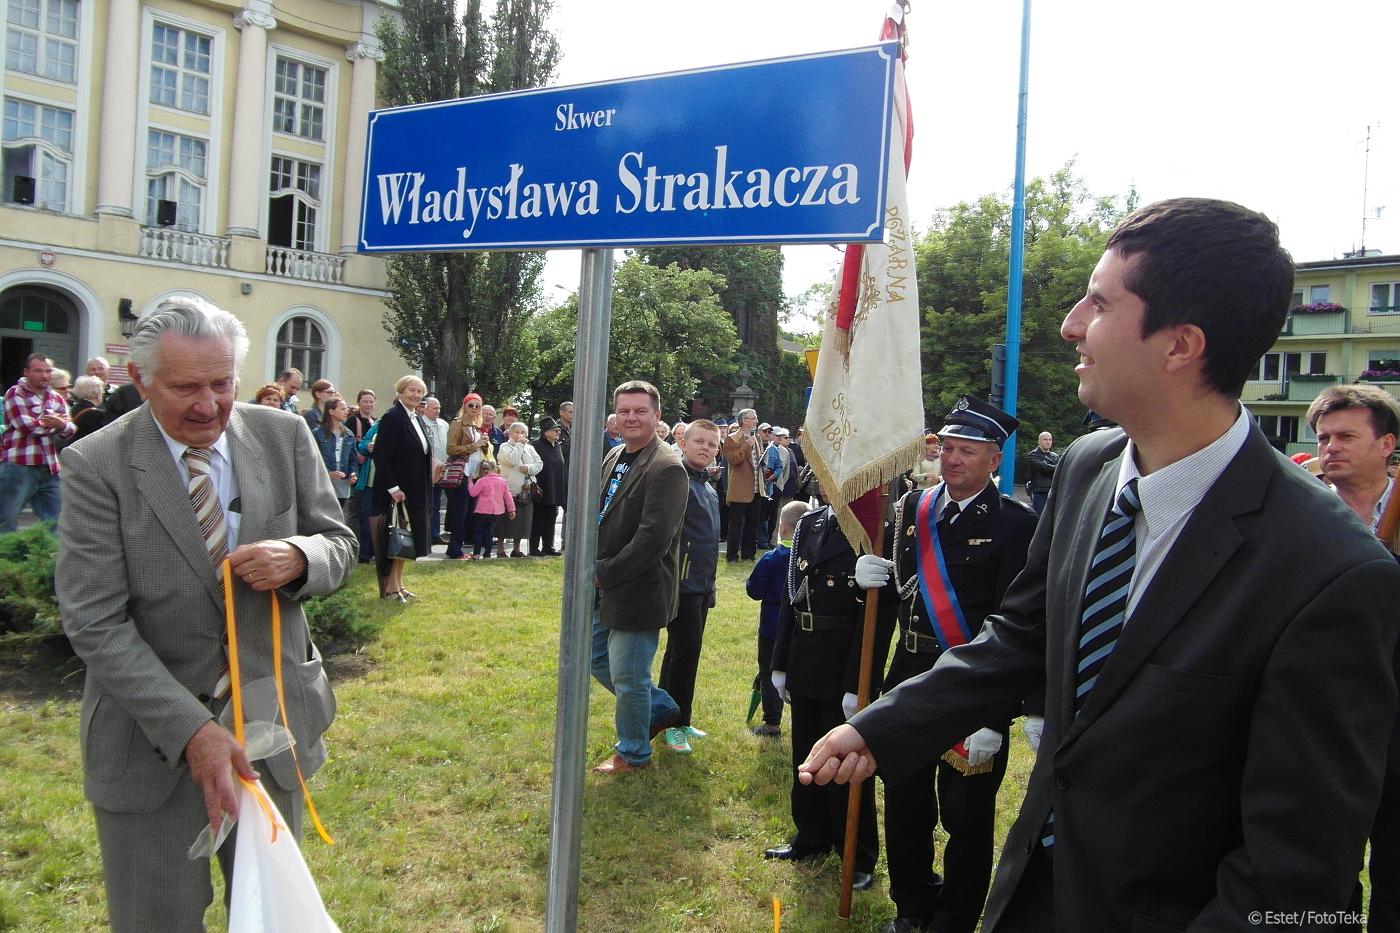 Ukłony dla Władysława Strakacza